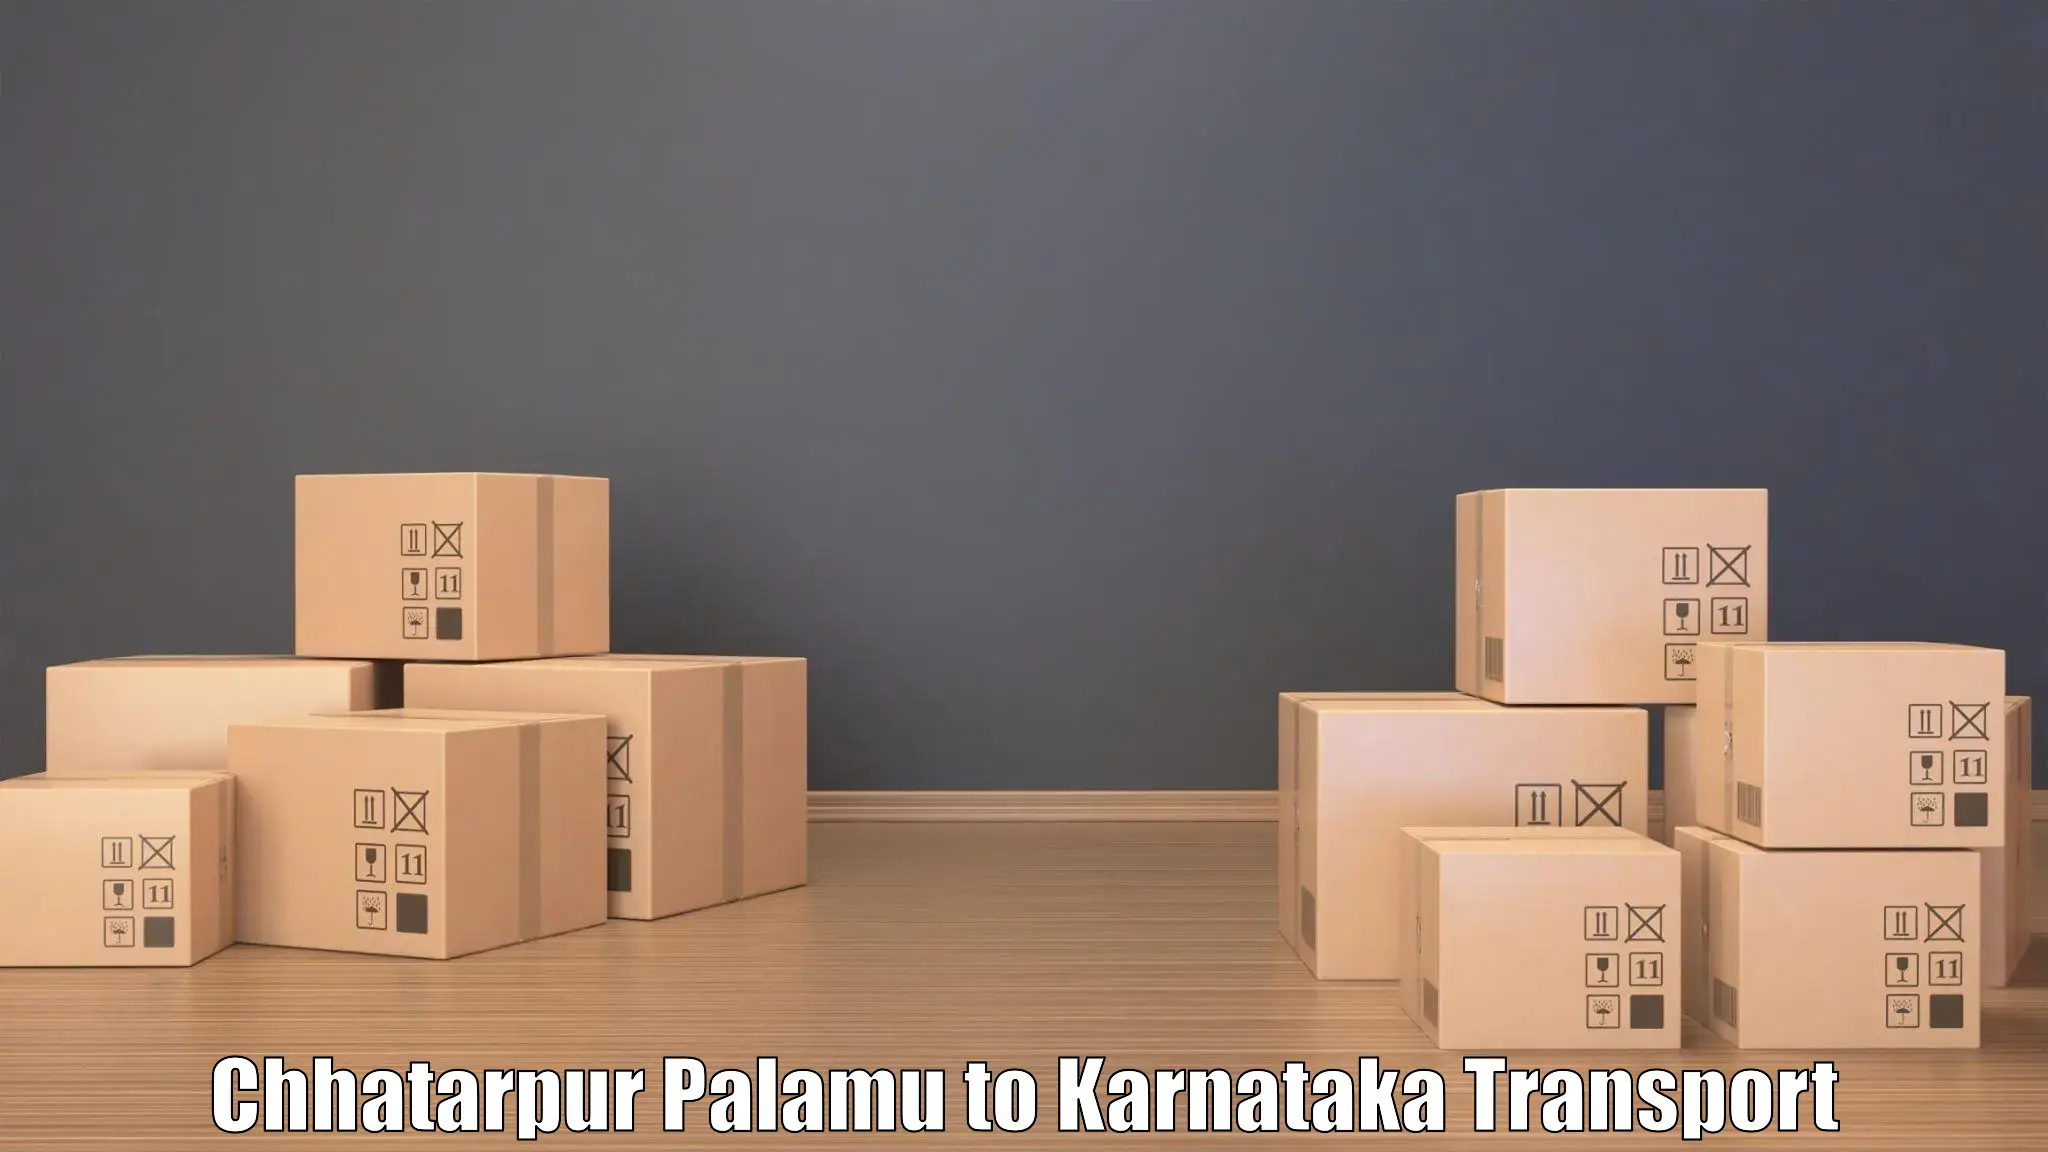 Daily parcel service transport Chhatarpur Palamu to Yellapur